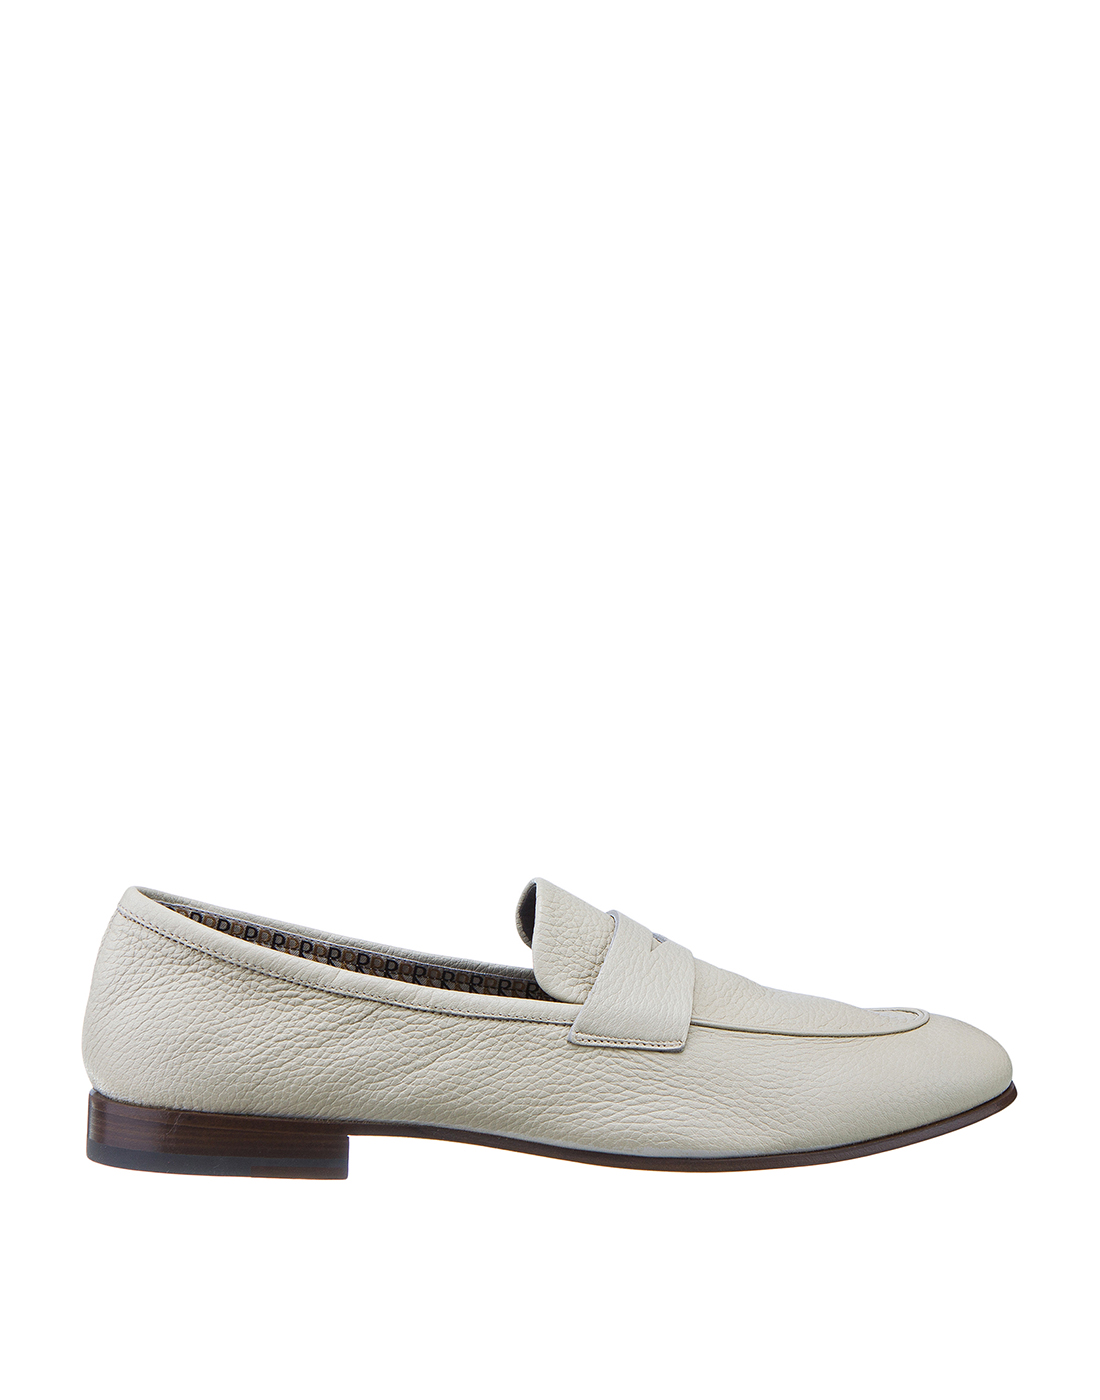 Туфли белые мужские Fratelli Rossetti S51870-1